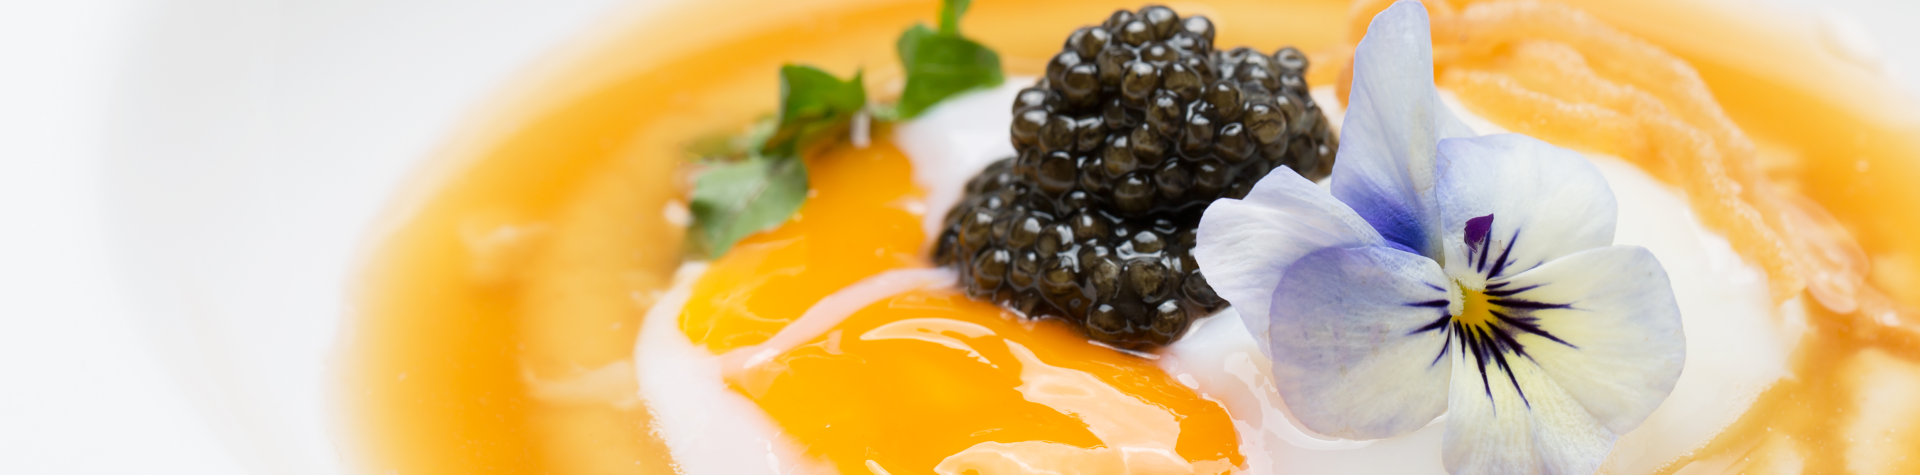 DEgustare – Italian Caviar, il gusto del caviale italiano è al Top del Mondo